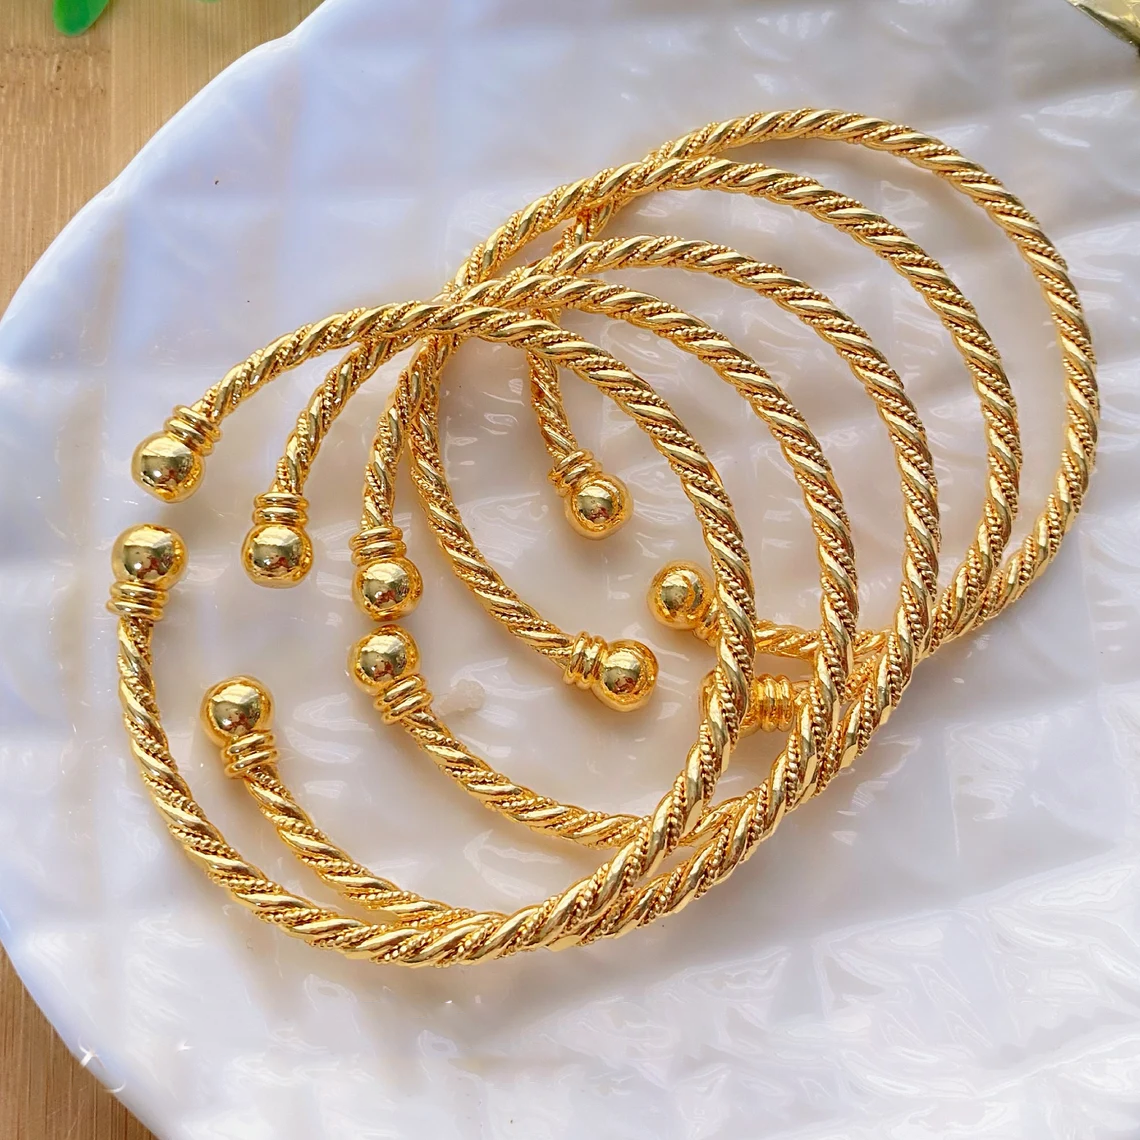 Adjustable Bangle Twist Gold Plated Bracelet 